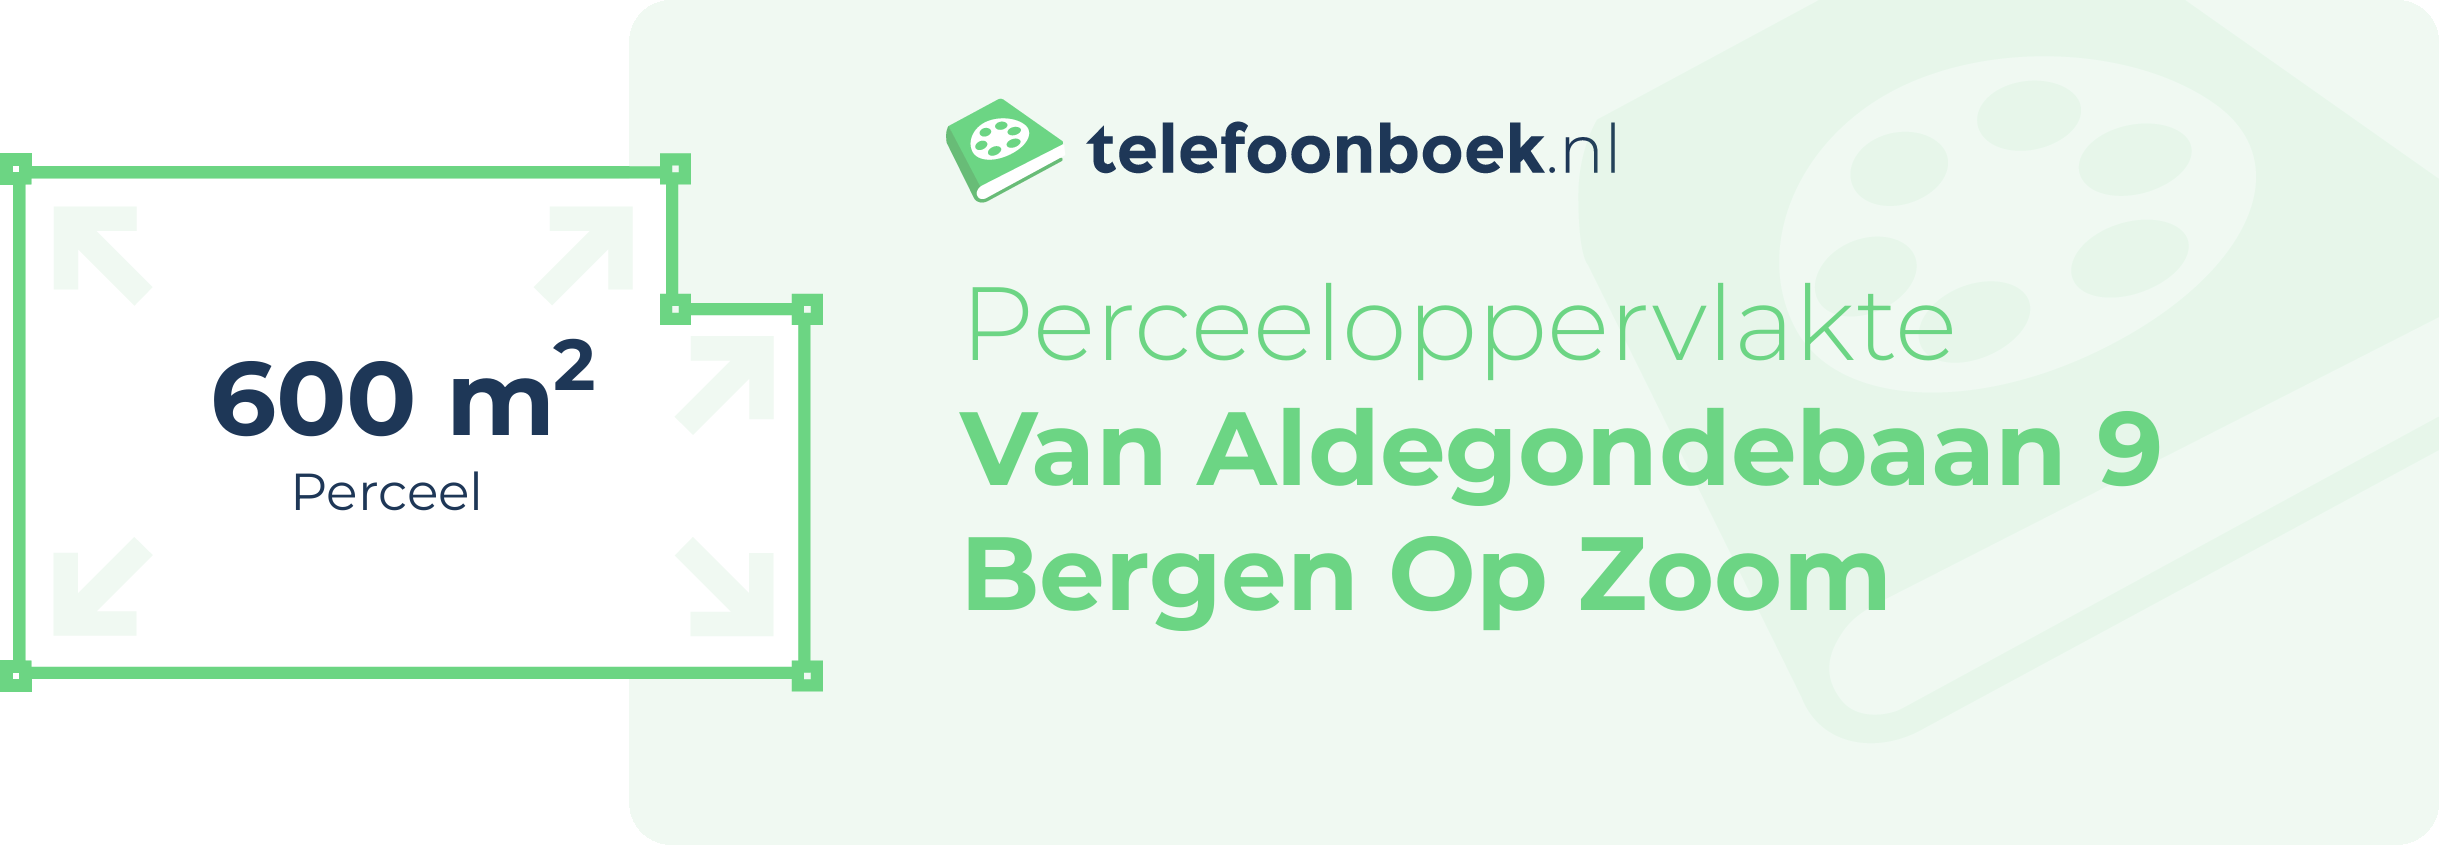 Perceeloppervlakte Van Aldegondebaan 9 Bergen Op Zoom